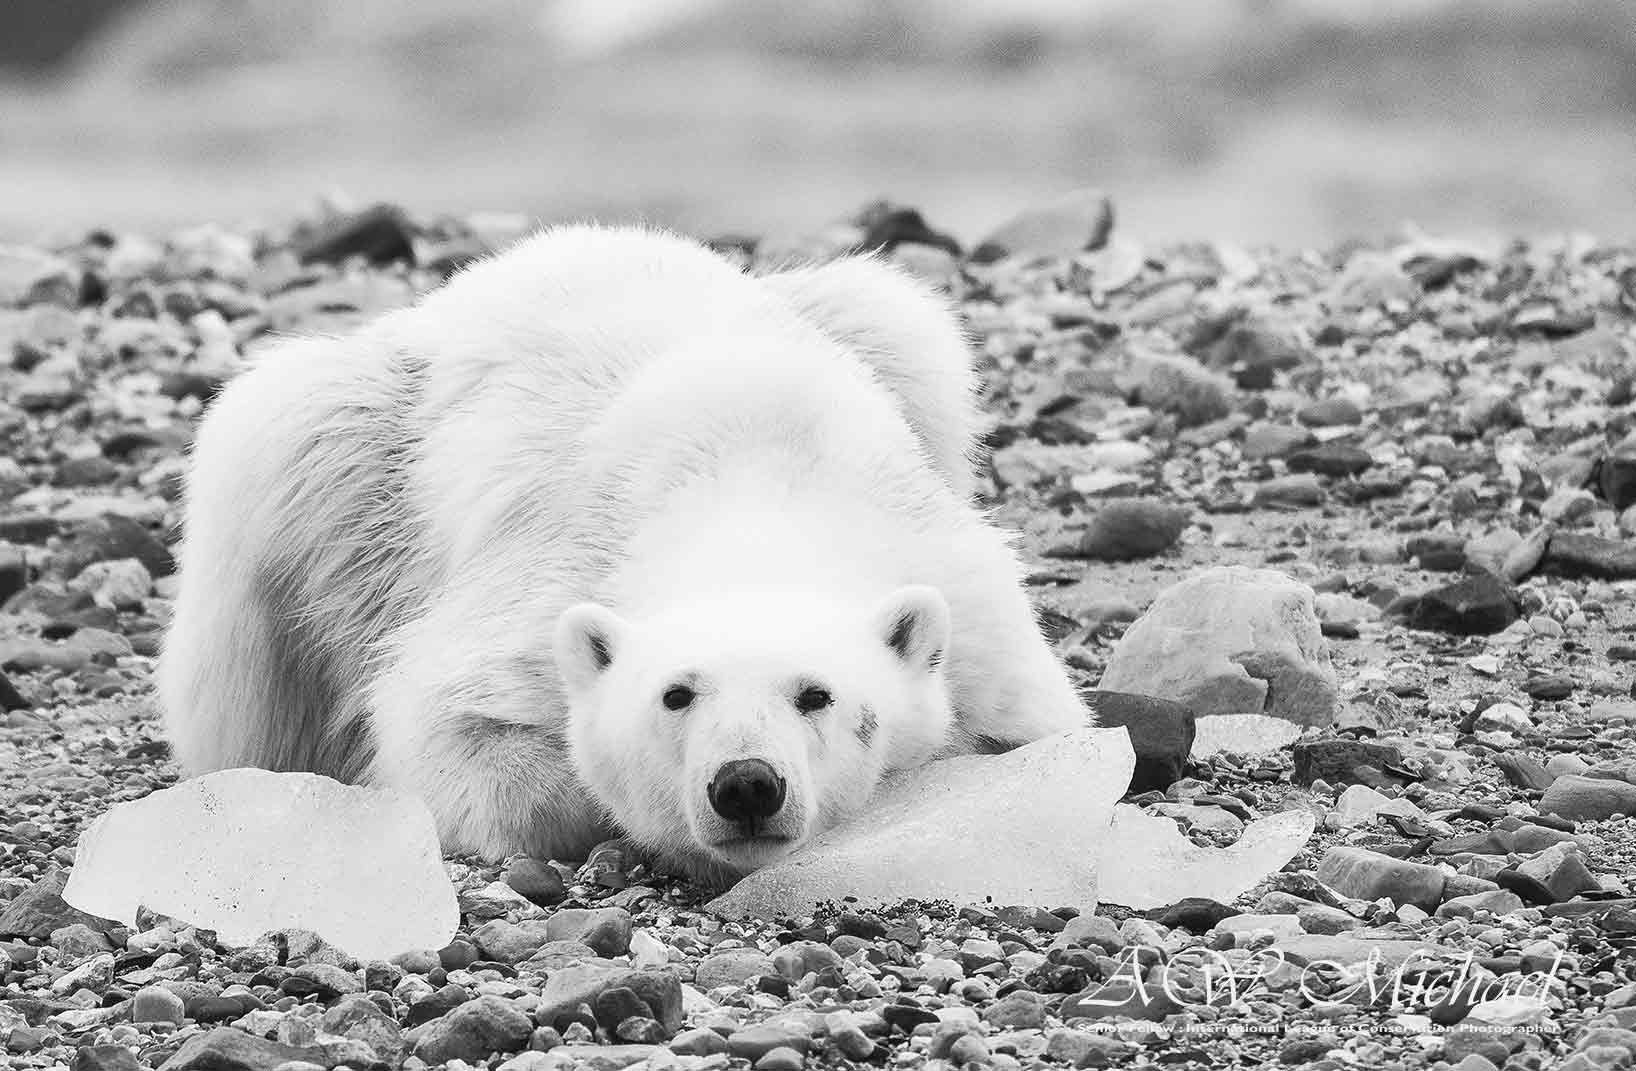 Polar bear. Image: Michael Aw (via Facebook).